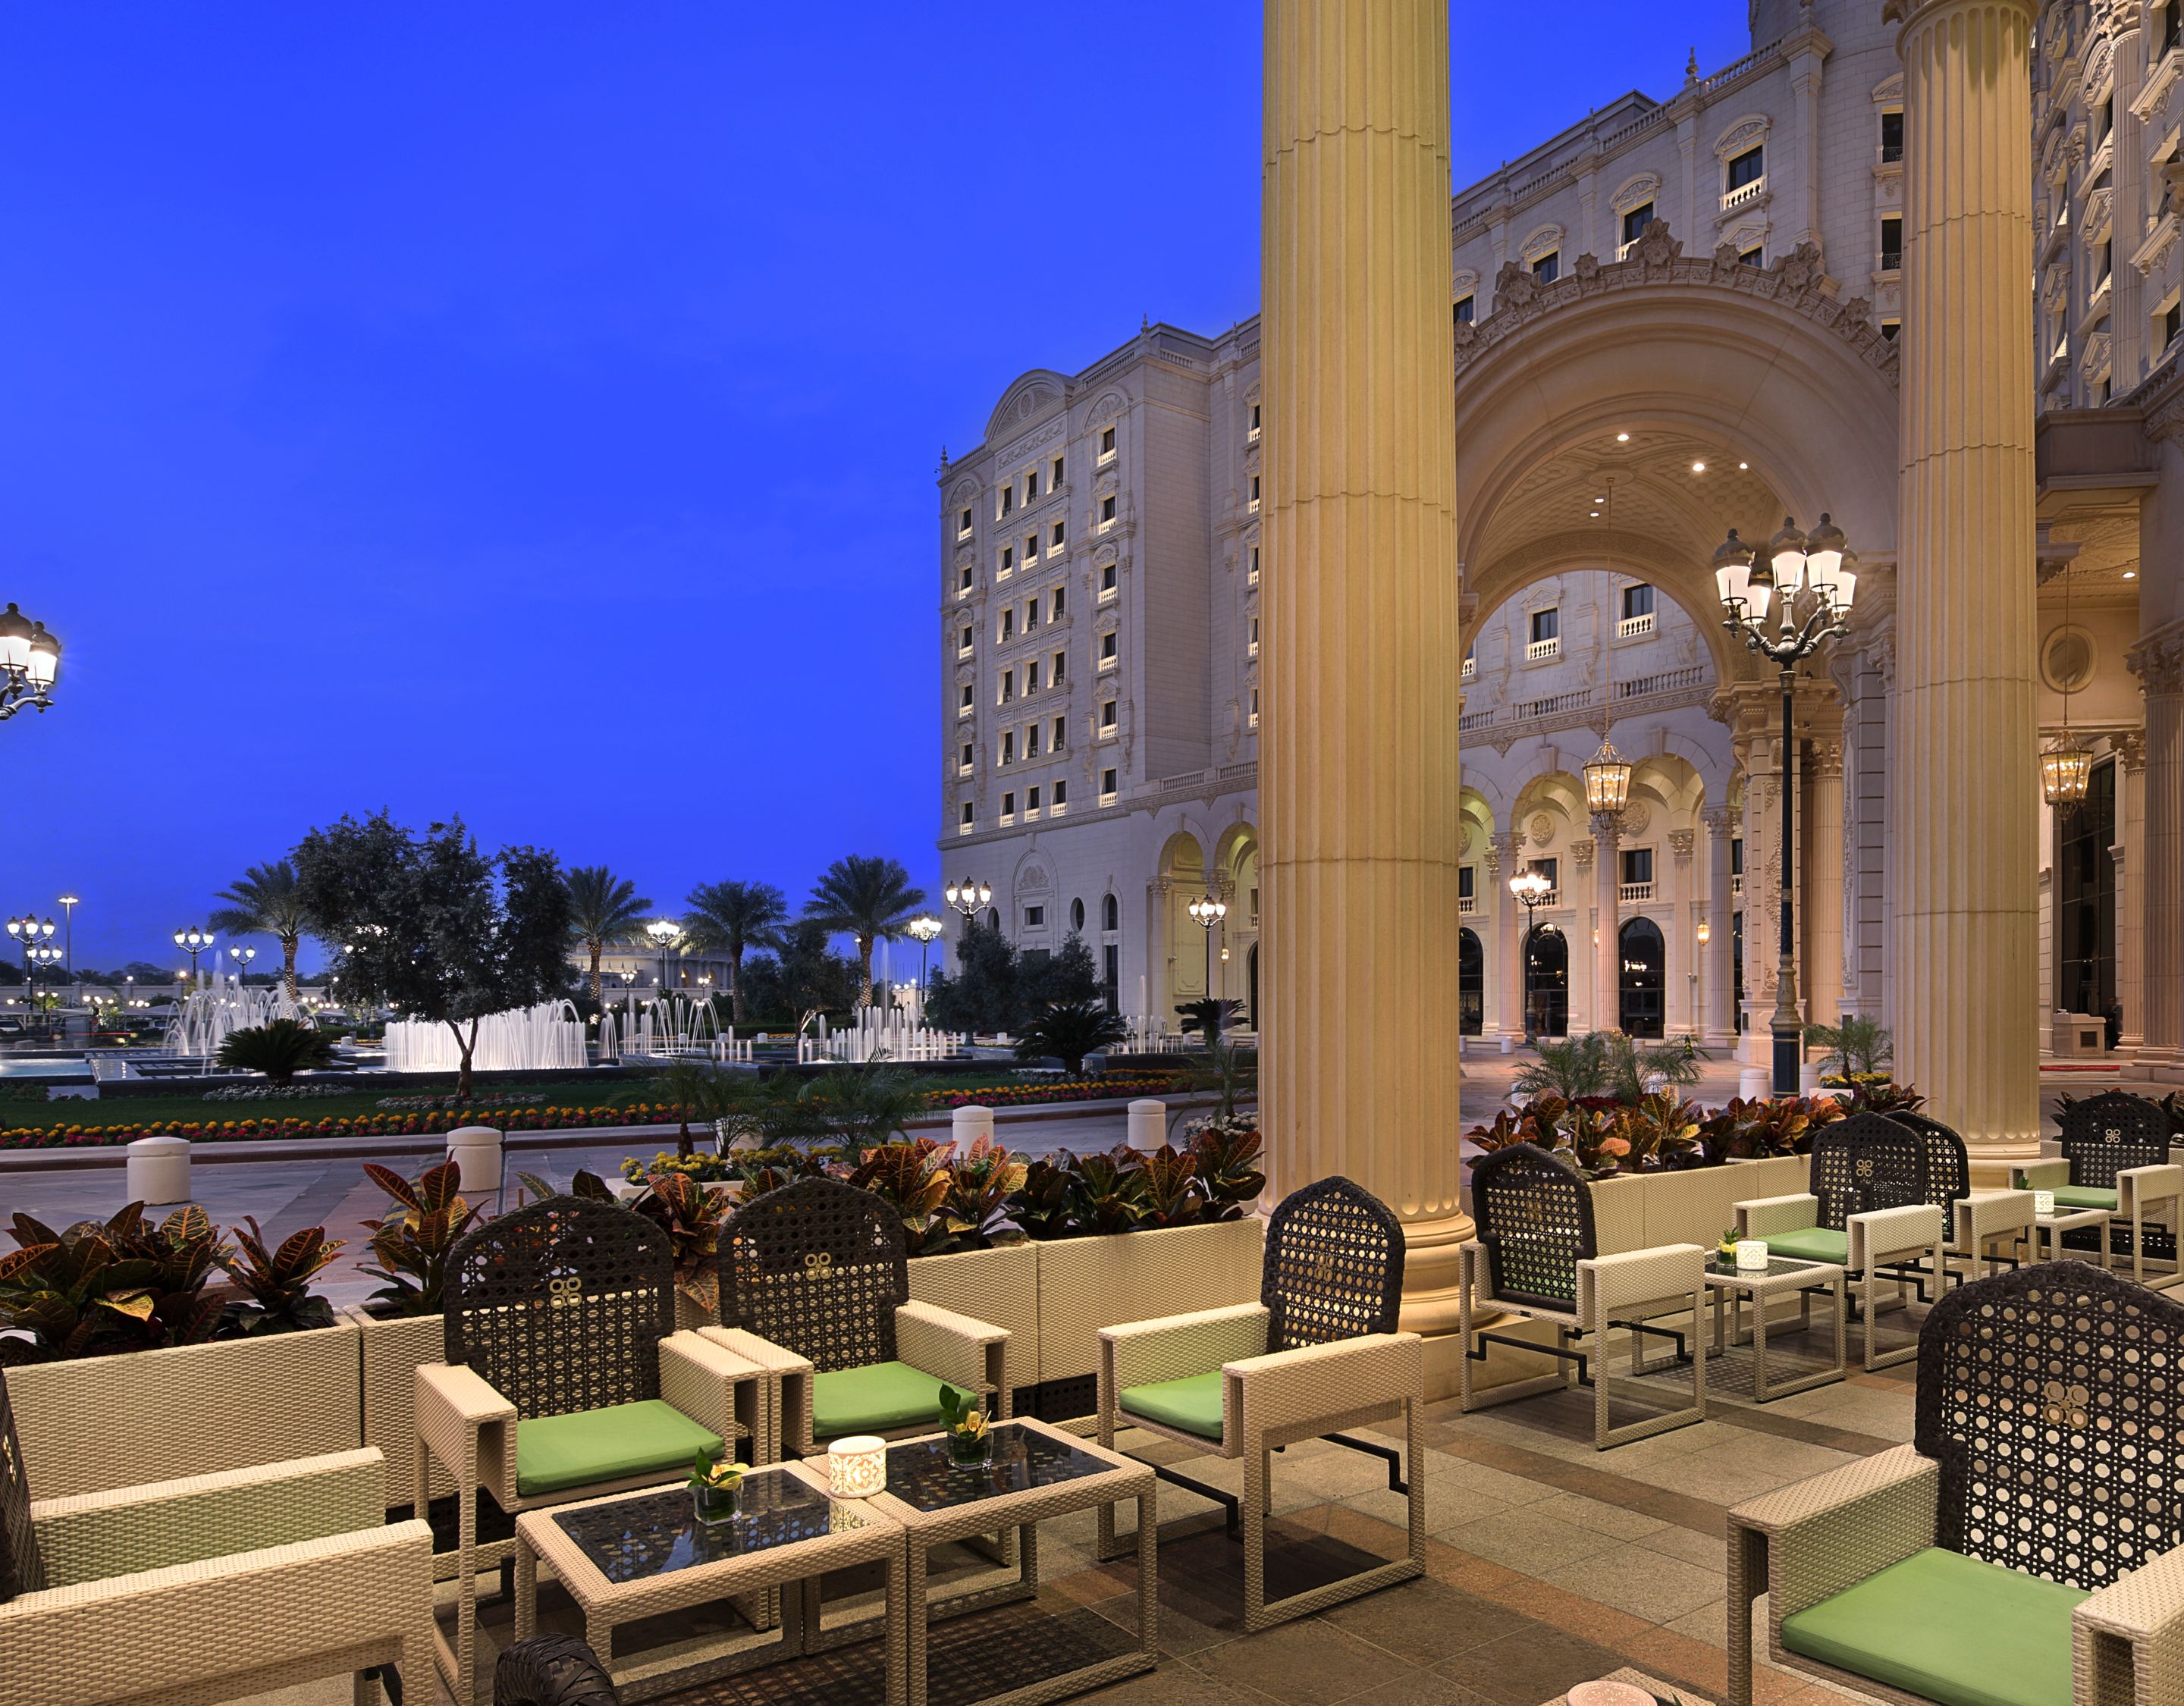 Personal Shopper Riyadh  Luxury Brands Concierge Service in Riyadh